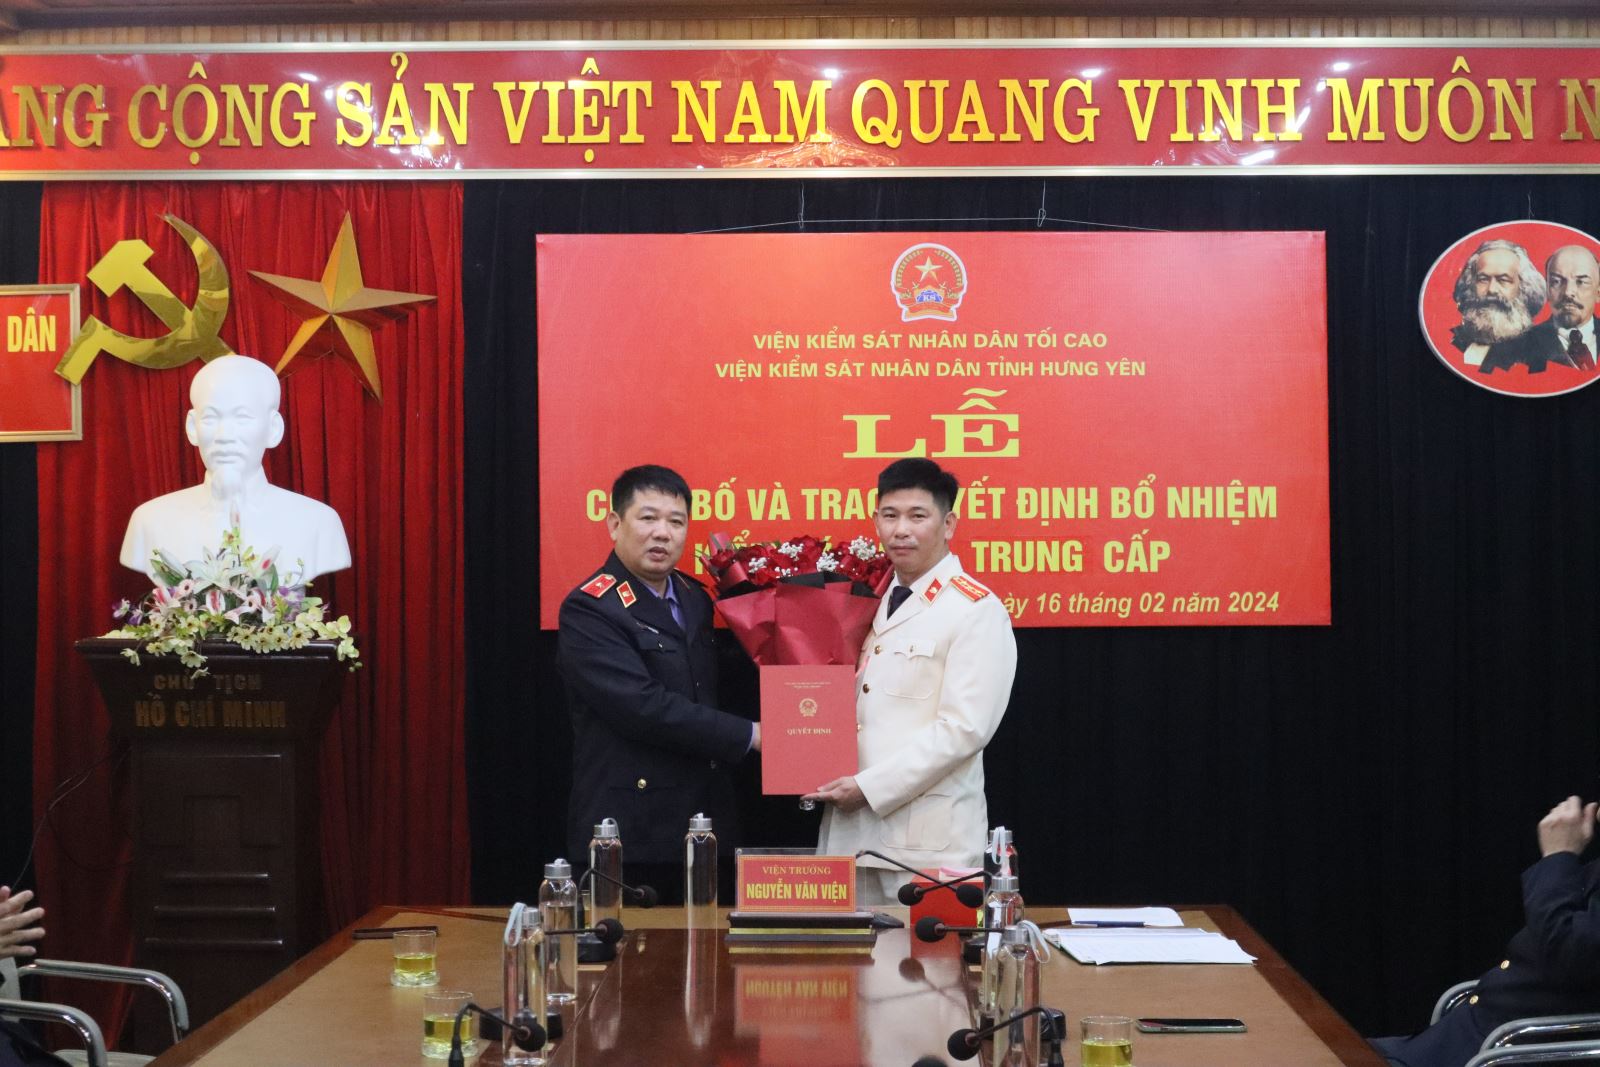 Lễ công bố và trao quyết định bổ nhiệm chức danh Kiểm sát viên trung cấp Viện kiểm sát nhân dân tỉnh Hưng Yên